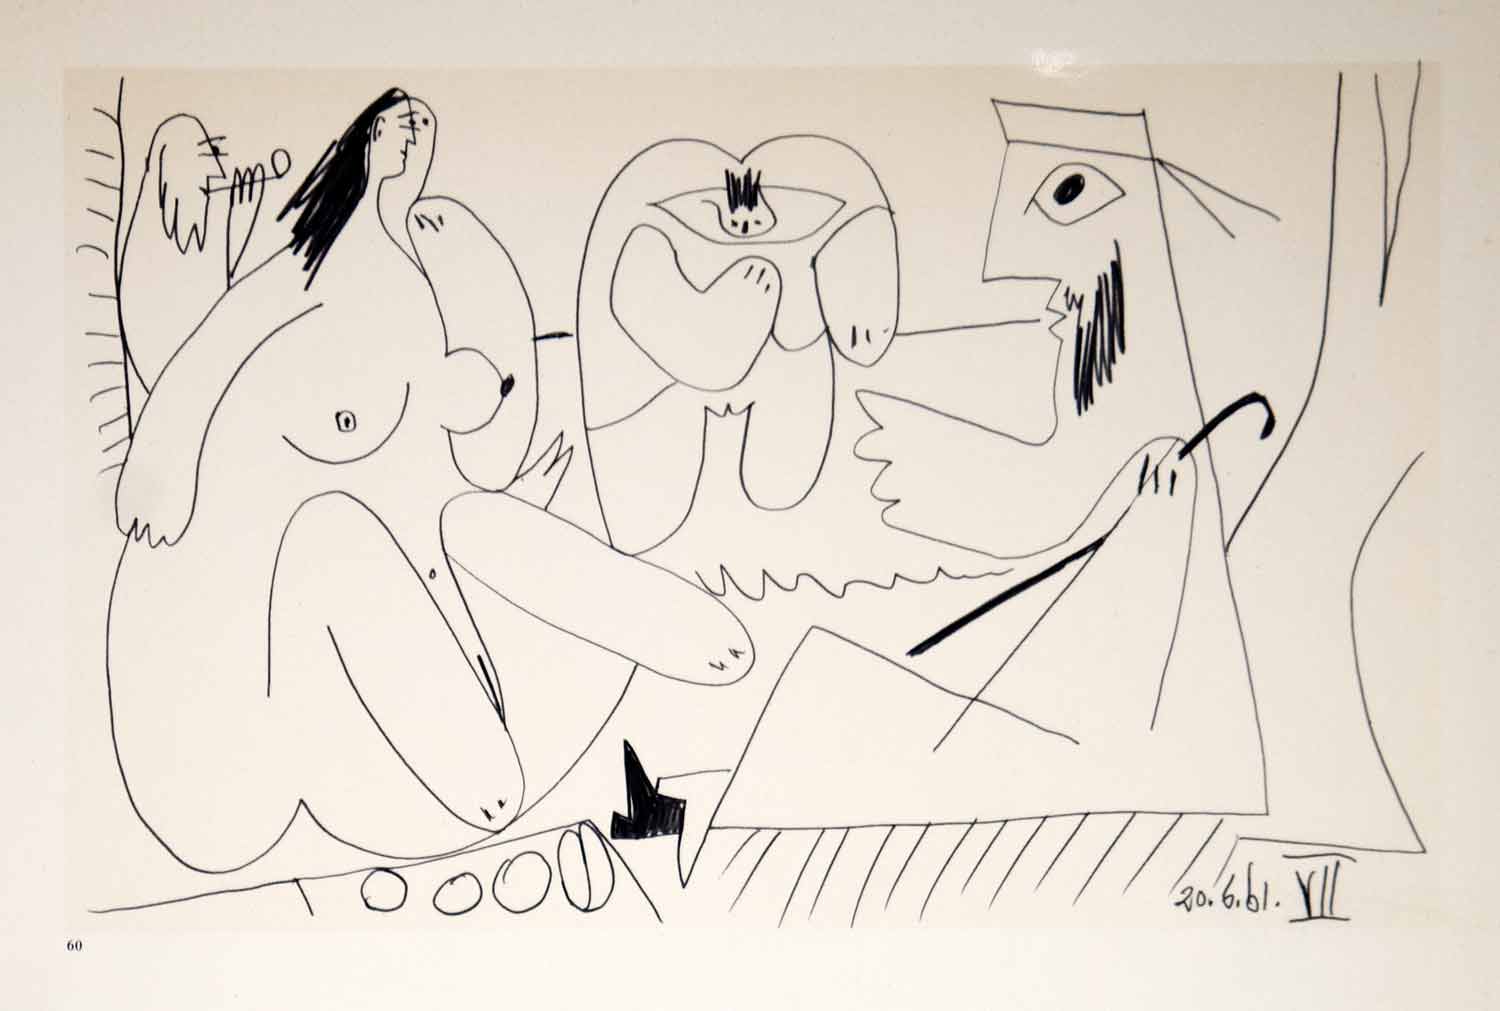 1962 Photolithograph Pablo Picasso Nude Art Le Dejeuner sur l'herbe 20.6.61 VII